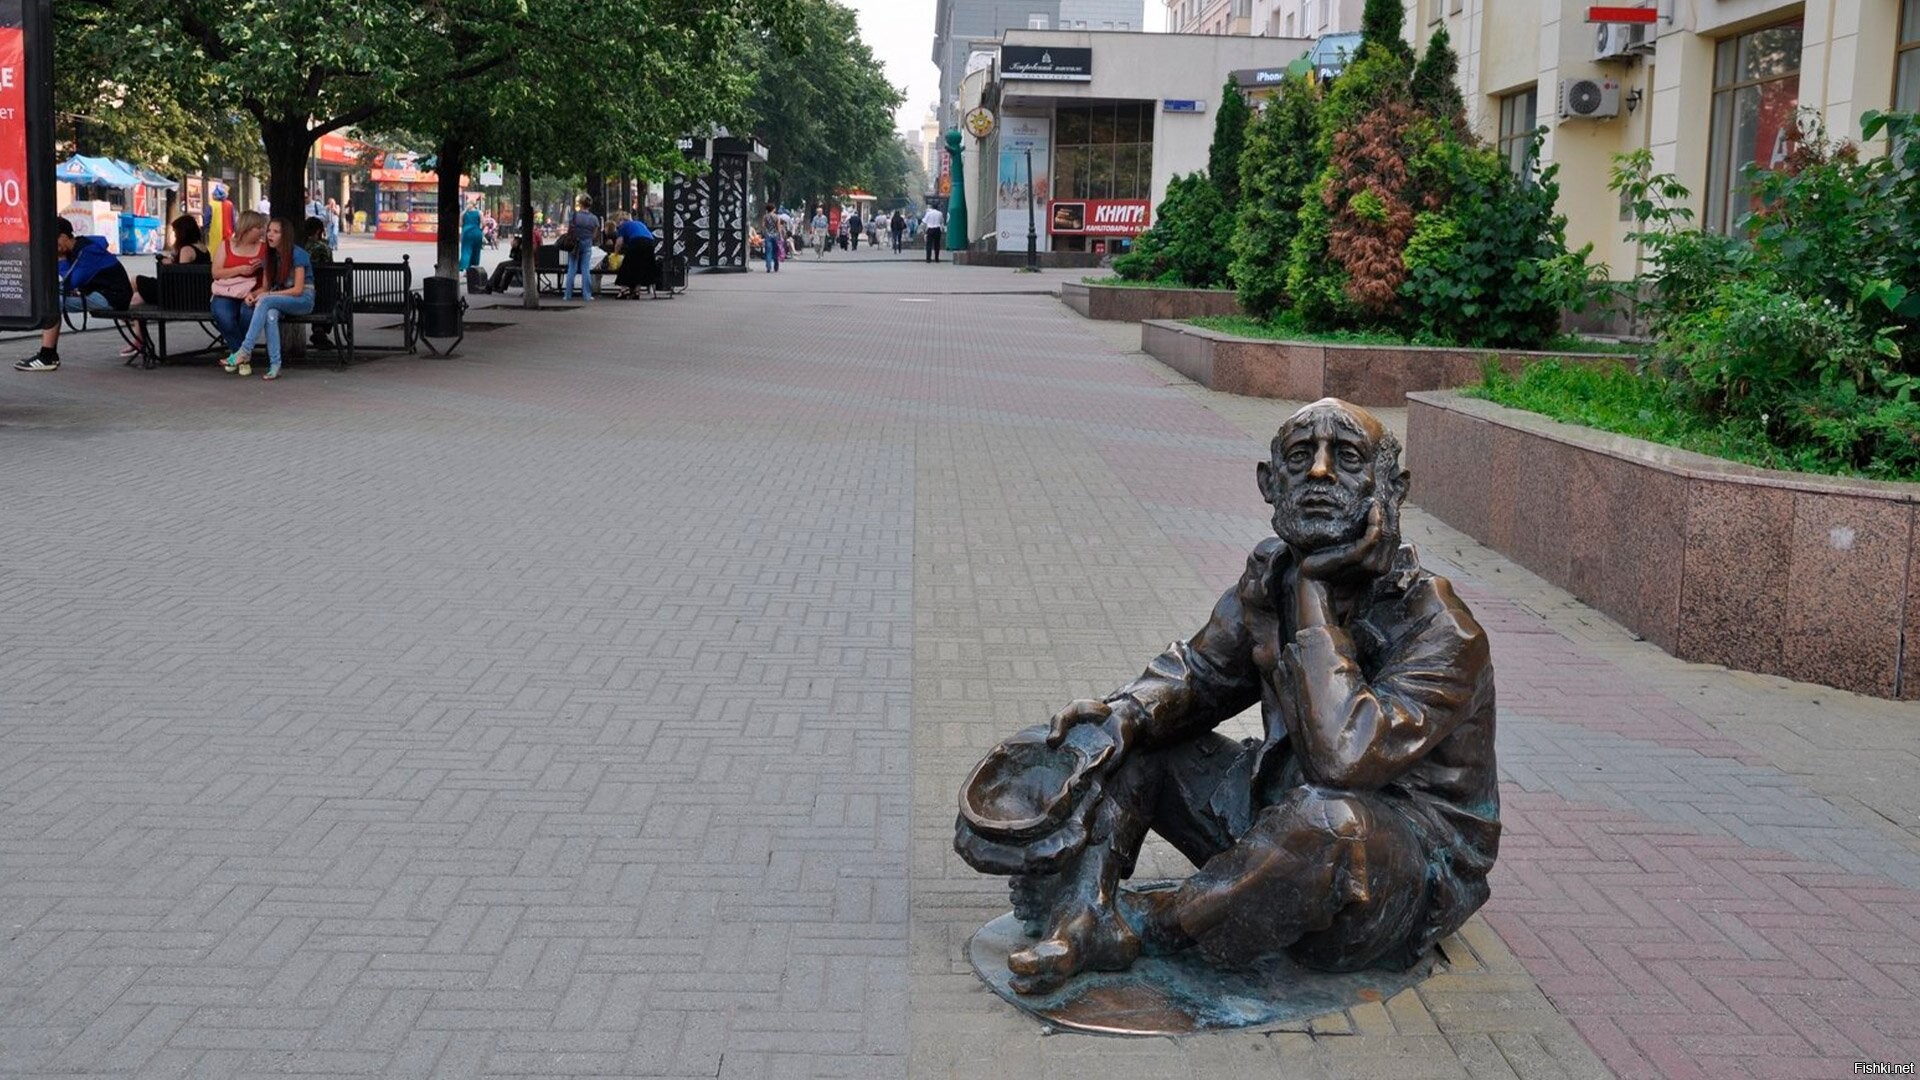 улица кирова челябинск фото